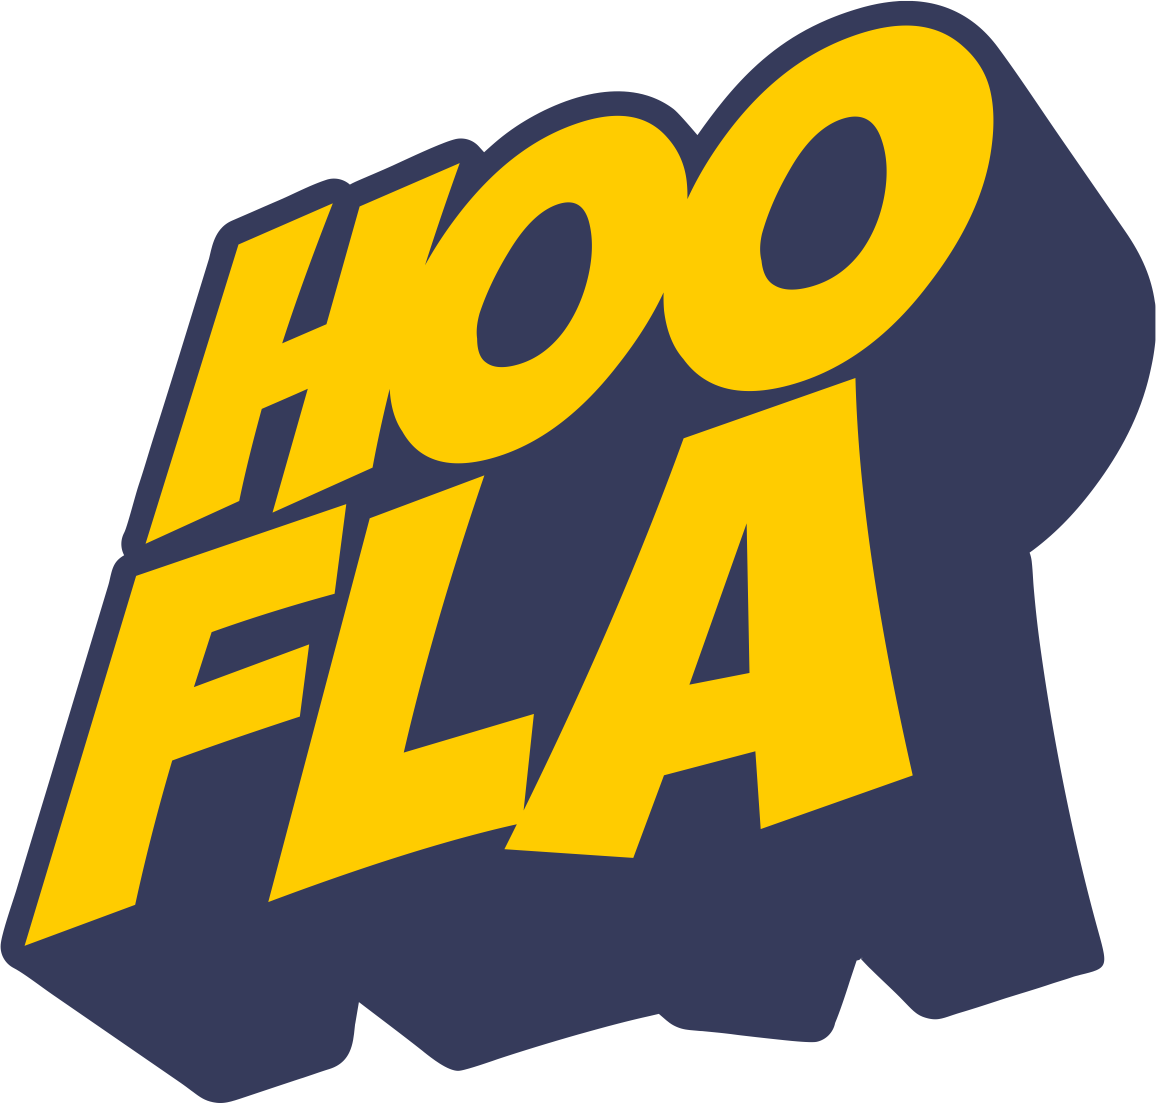 hoofla logo 2019 full colour